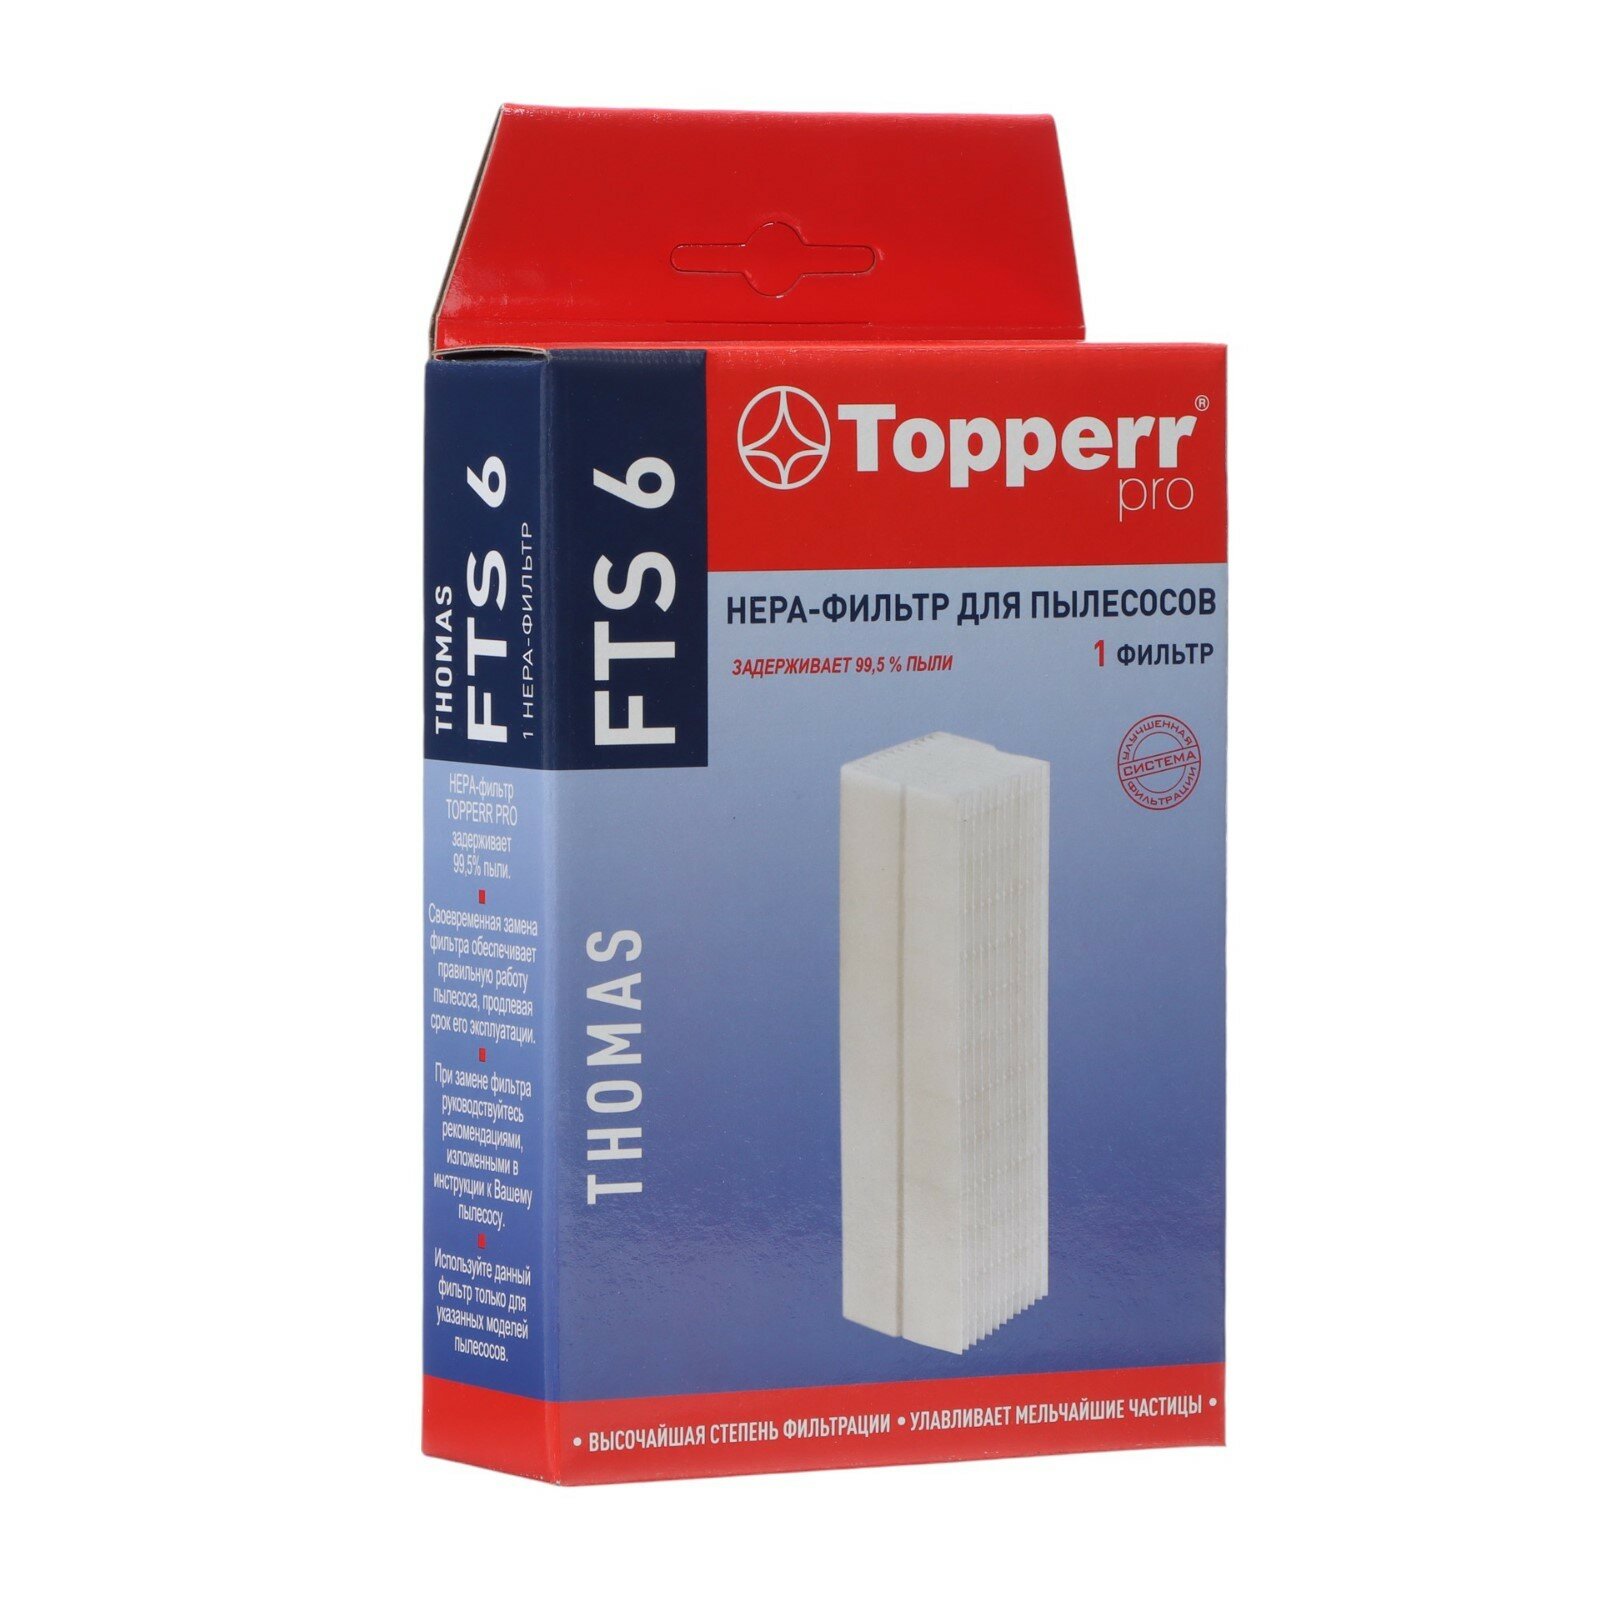 HEPA фильтр для пылесоса Topperr - фото №20